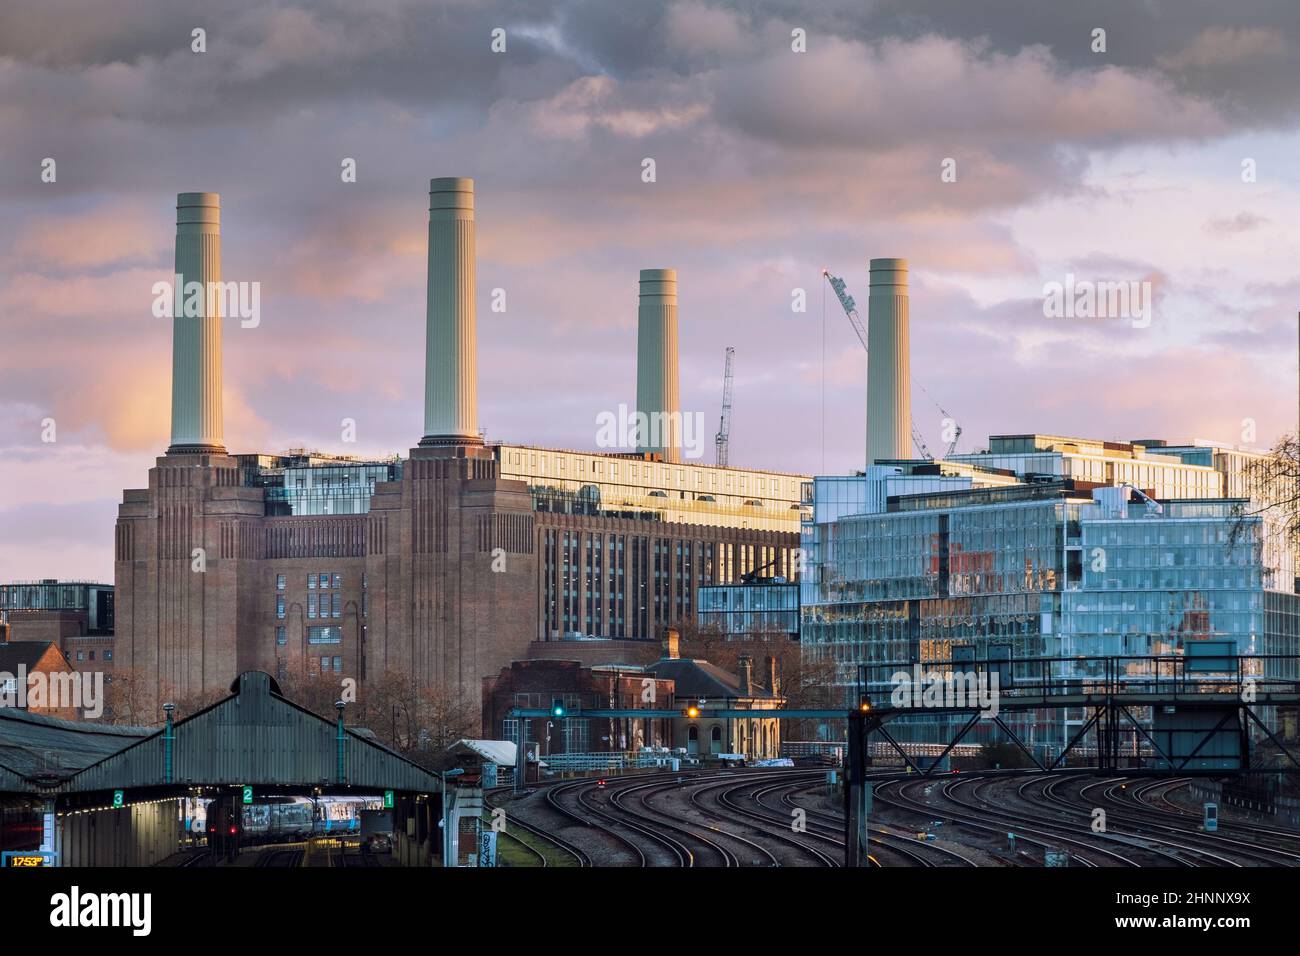 La centrale elettrica di Battersea e le linee ferroviarie fino al capolinea della Victoria Railway, sotto un suggestivo cielo serale, Londra, Regno Unito Foto Stock